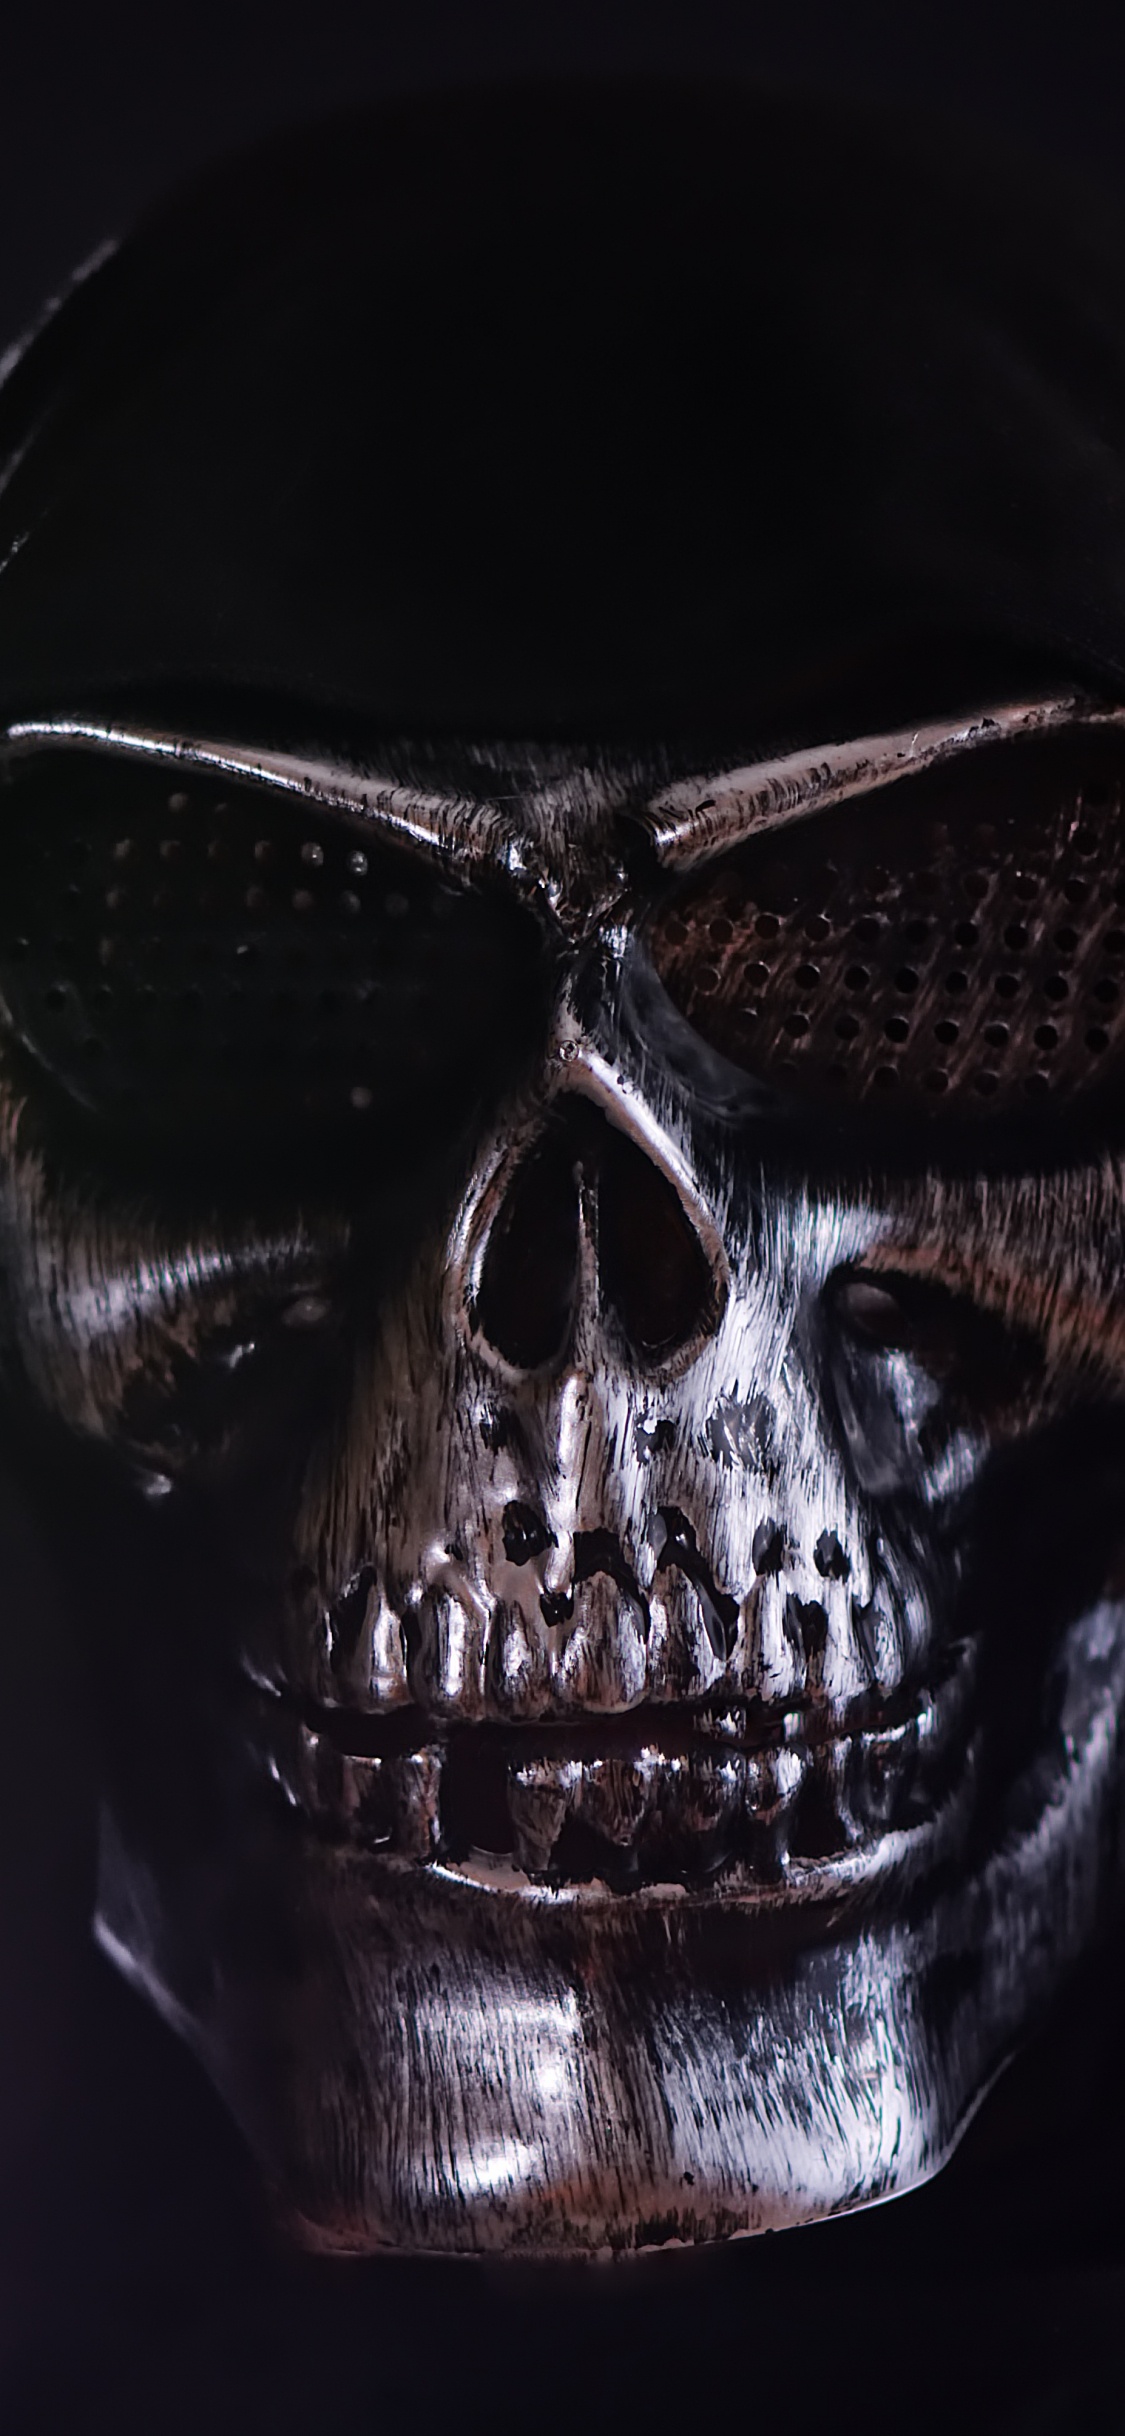 Masque de Crâne Noir et Argent. Wallpaper in 1125x2436 Resolution